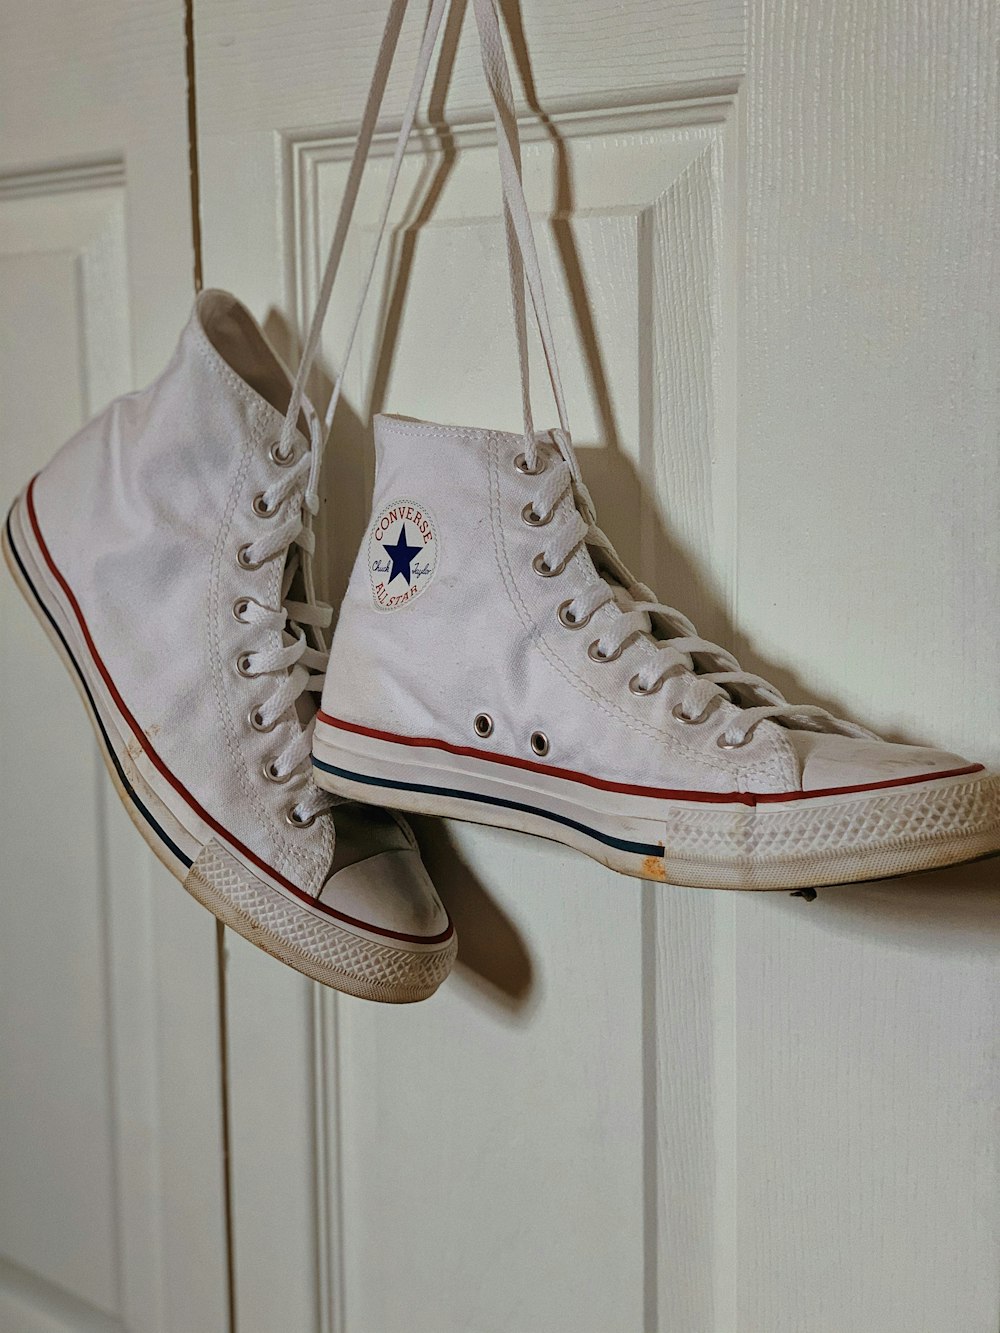 Zapatillas altas Converse All Star blancas